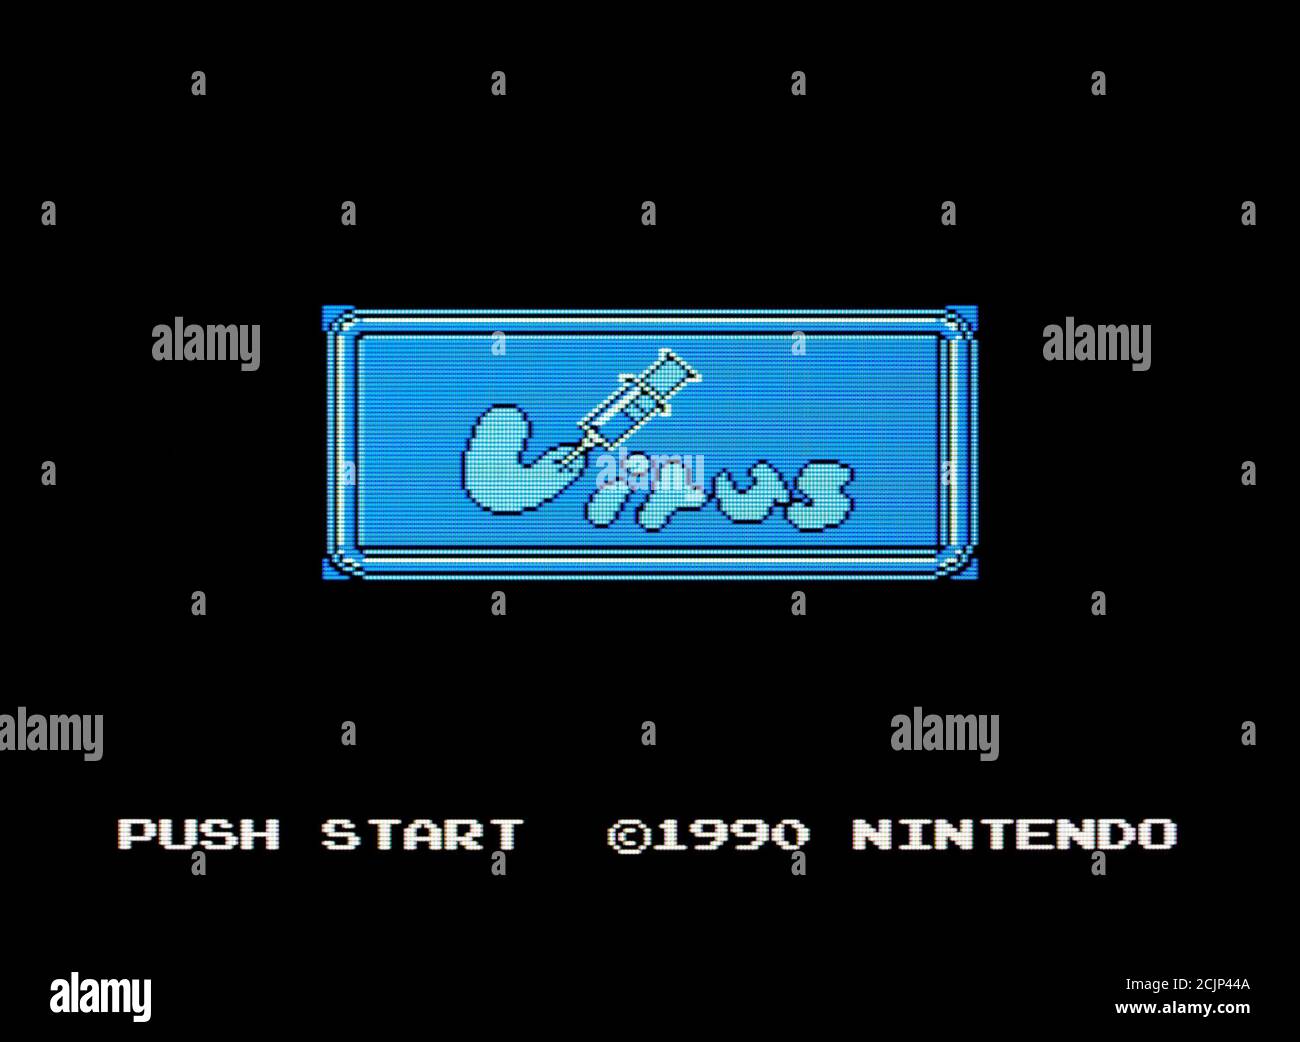 Virus - Nintendo Entertainment System - NES Videogame - Editorial à utiliser uniquement Banque D'Images